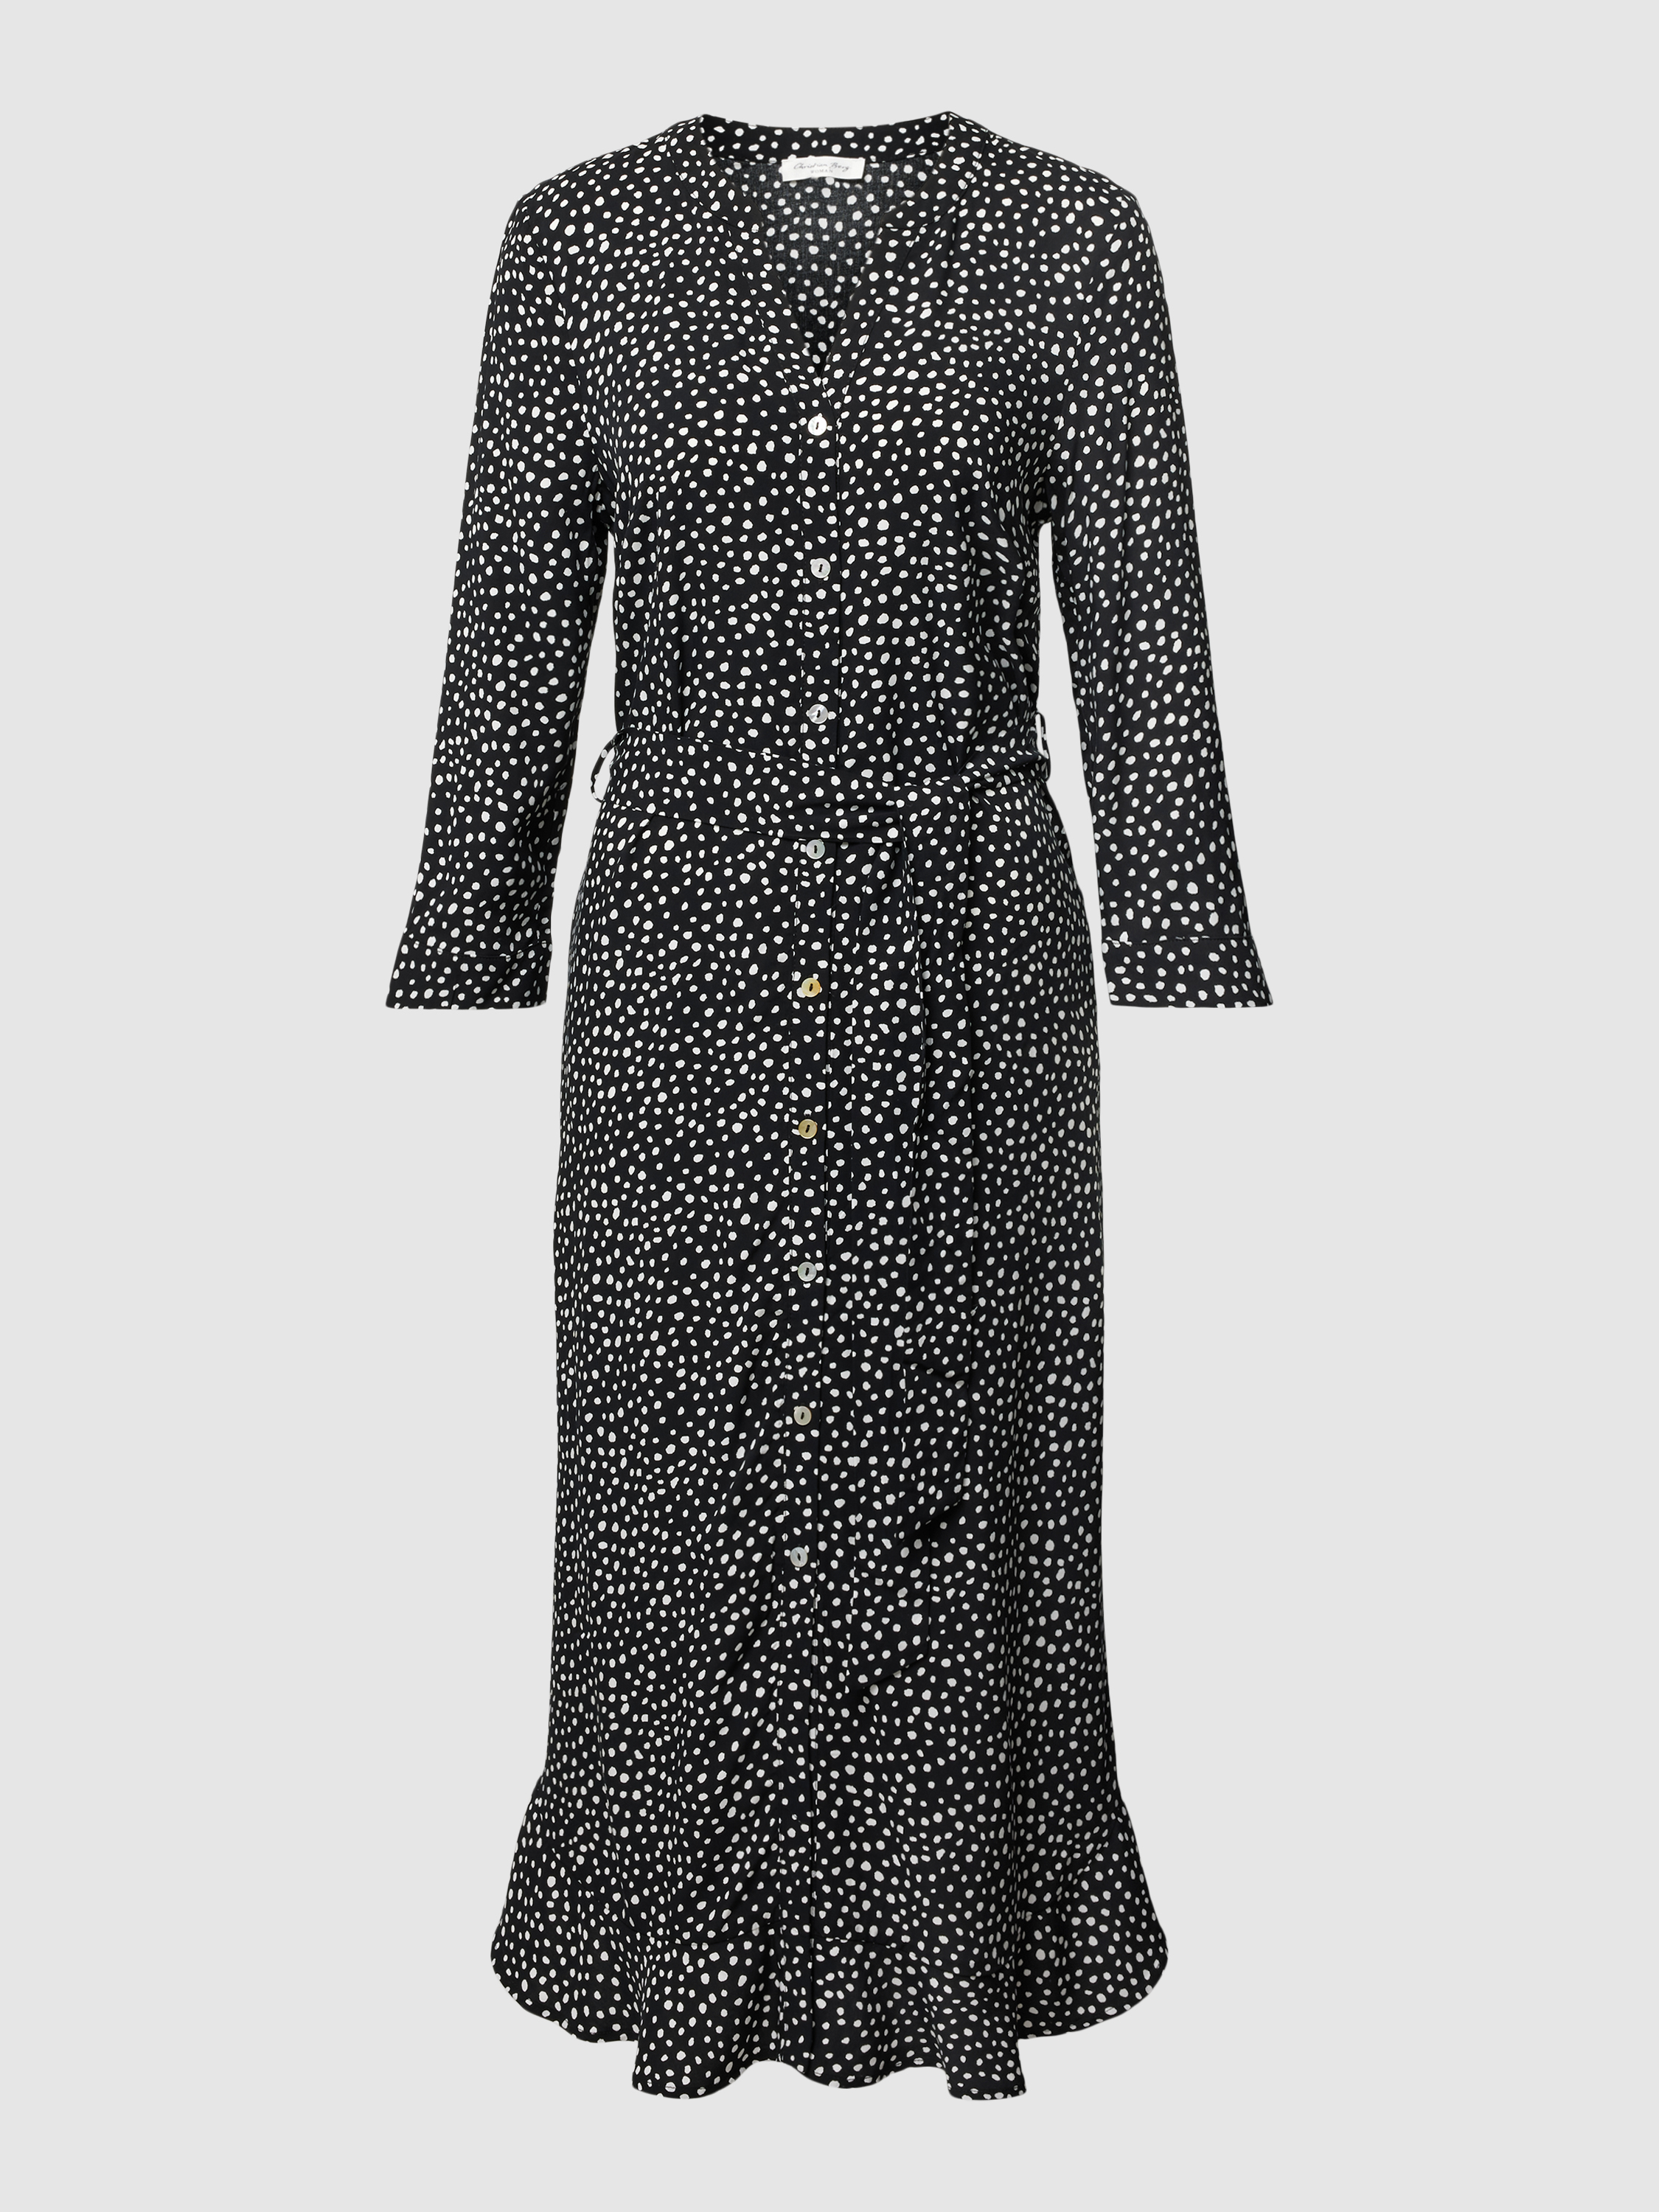 Платье женское Christian Berg Woman 1825028 черное 42 (доставка из-за рубежа)